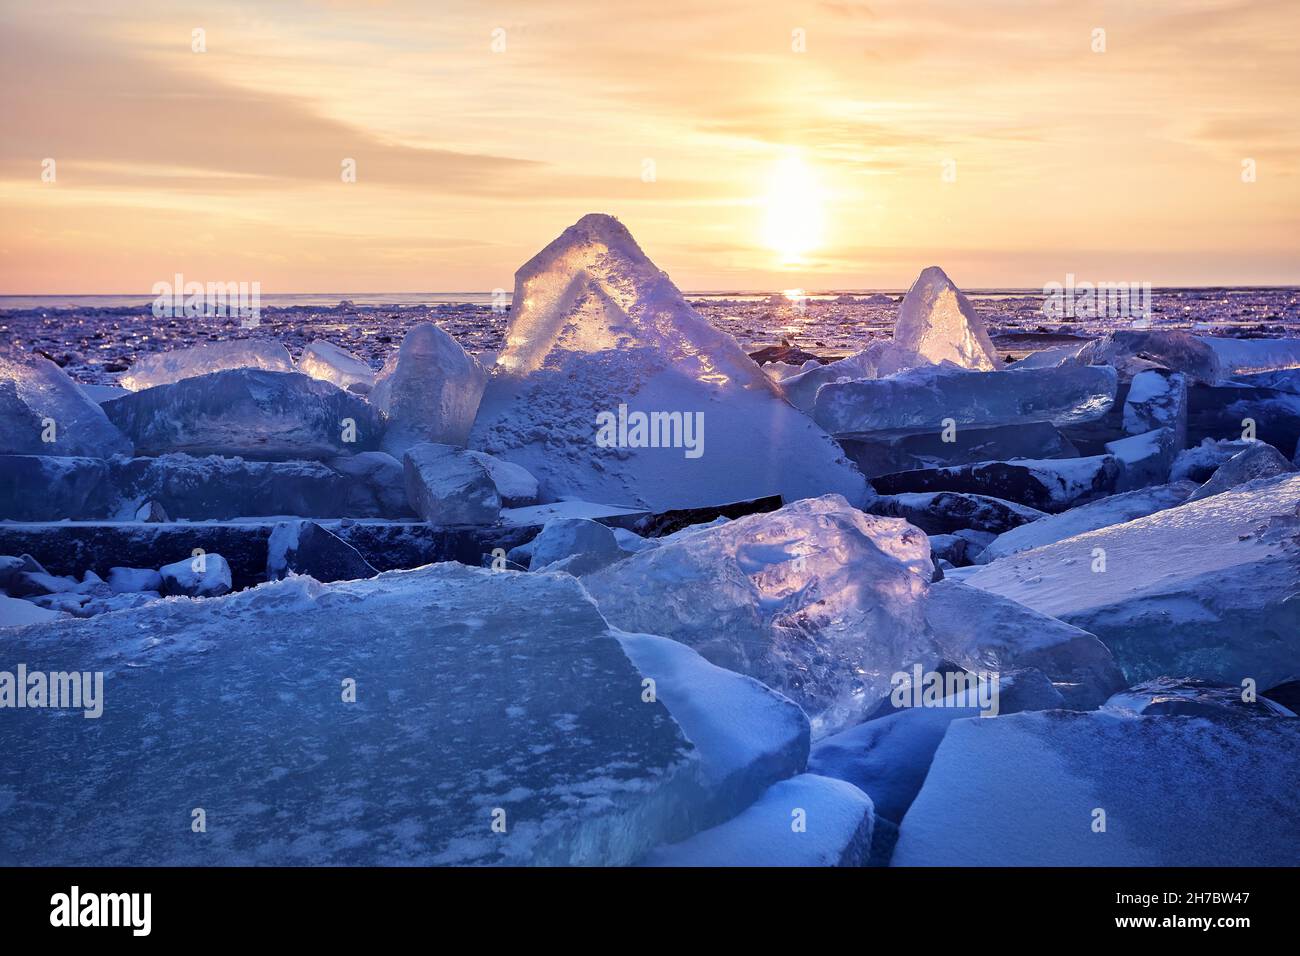 Magnifique paysage de triangle glace hummock et fissures au lac gelé Baikal, Russie Banque D'Images